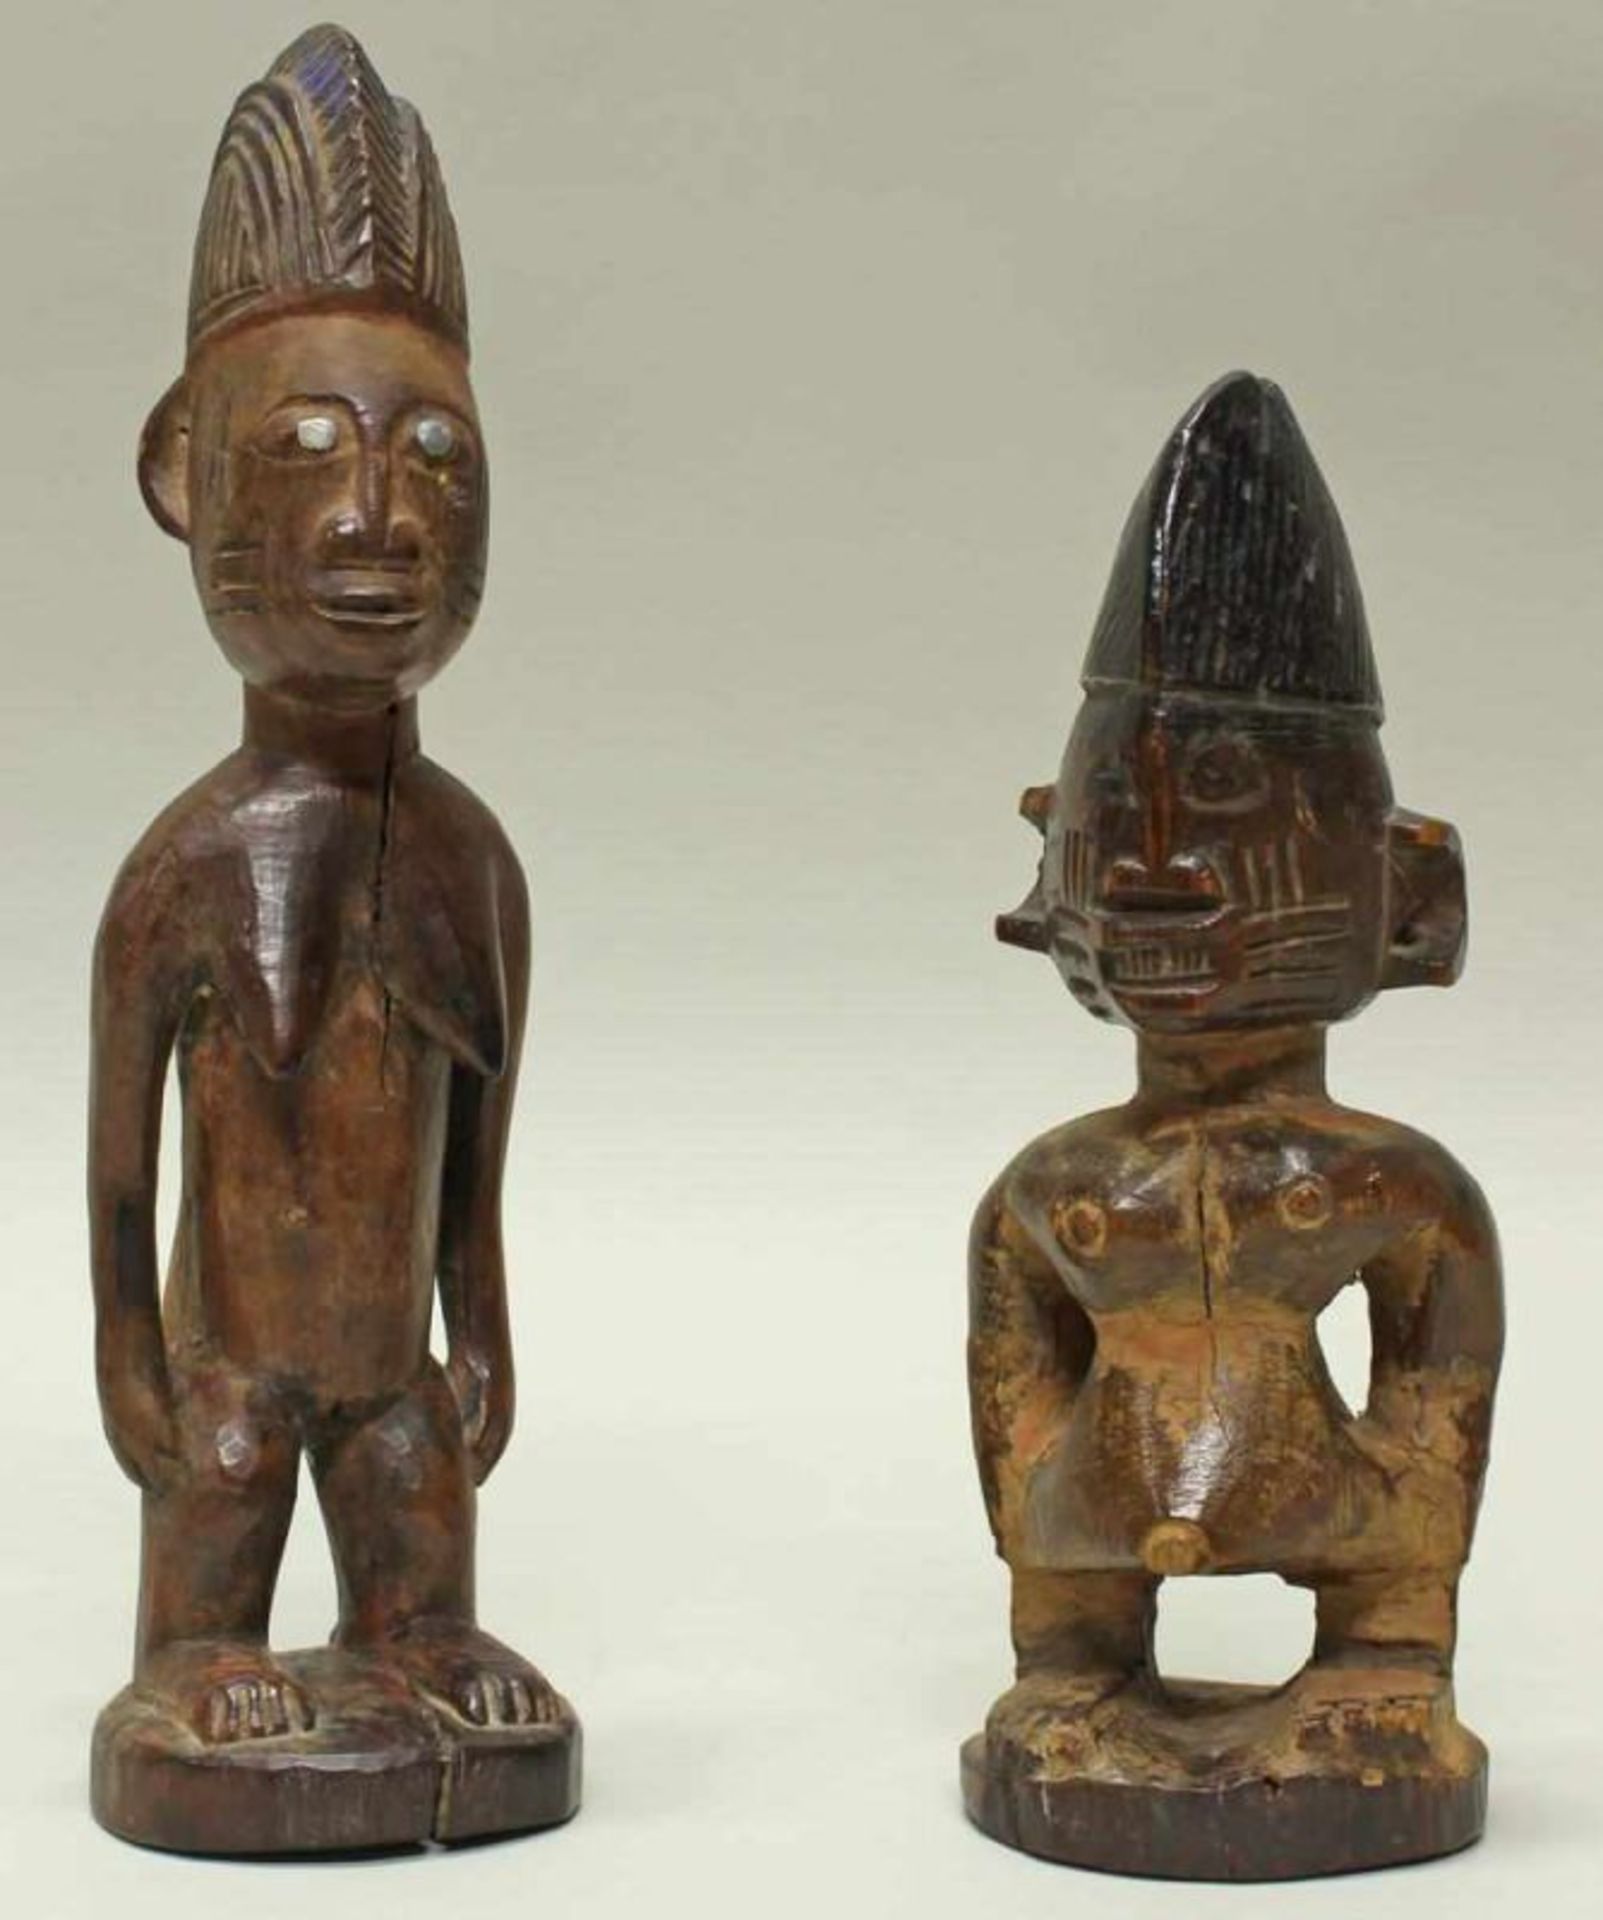 2 Figuren, Ibedji, Yoruba, Nigeria, Afrika, authentisch, Holz, patiniert, 23 cm bzw. 29 cm hoch.